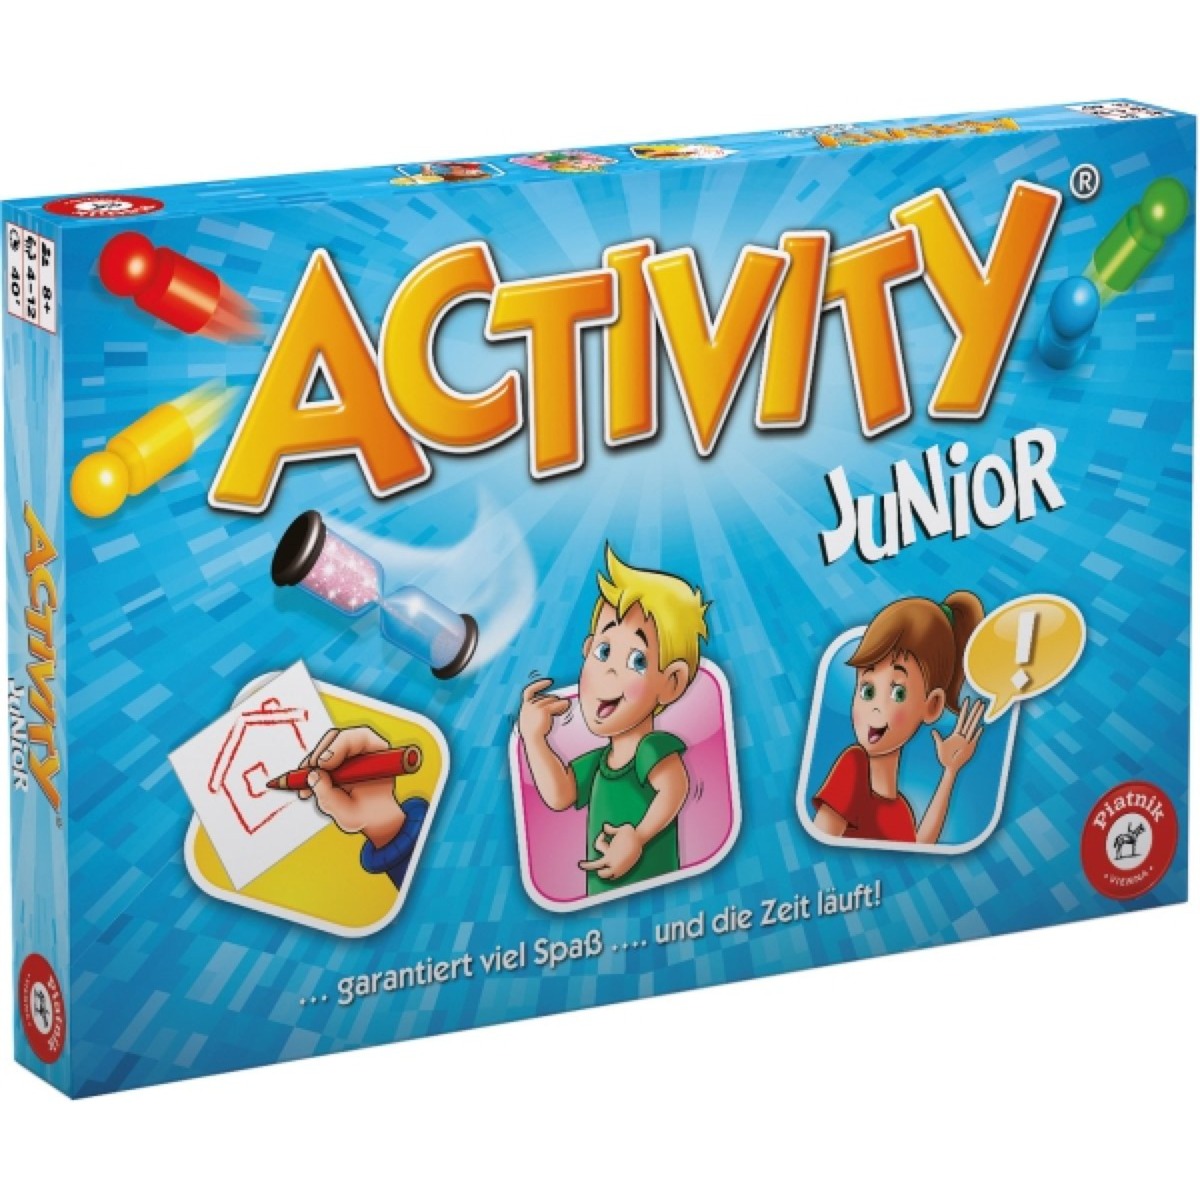 Image of Alternate - Activity Junior, Partyspiel online einkaufen bei Alternate